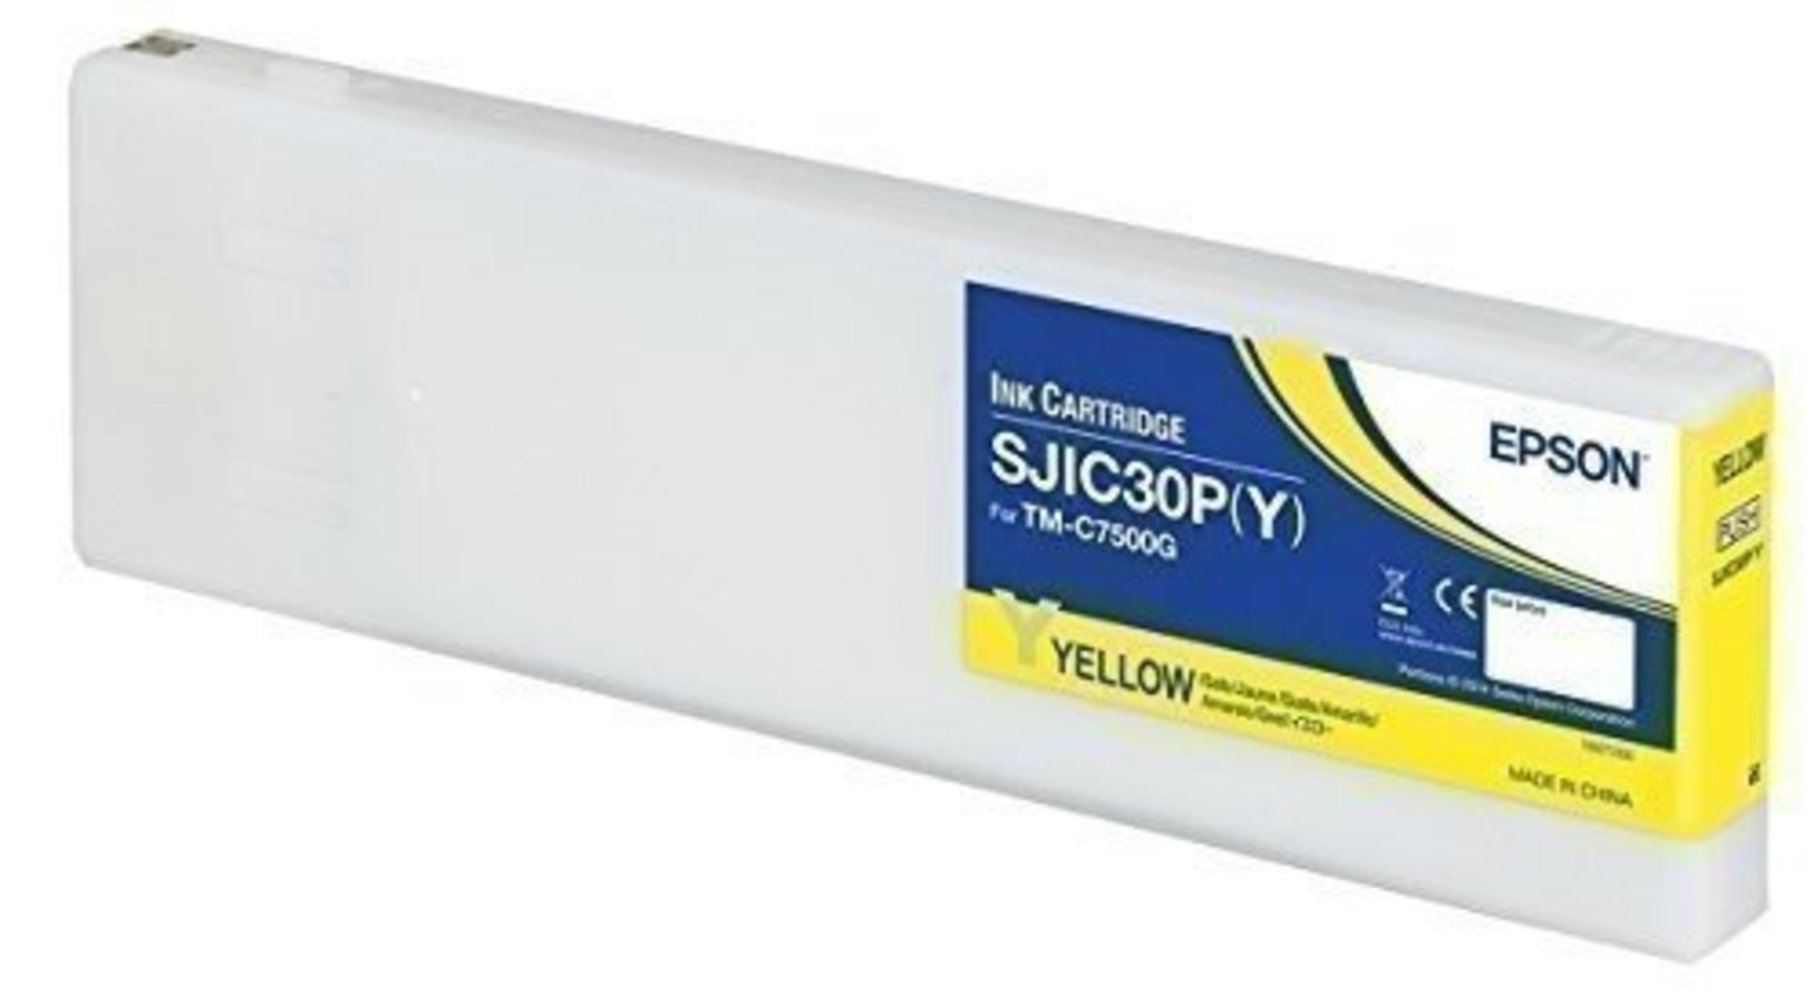 Epson SJIC30P(Y) Tintenpatrone Gelb für ColorWorks C7500G